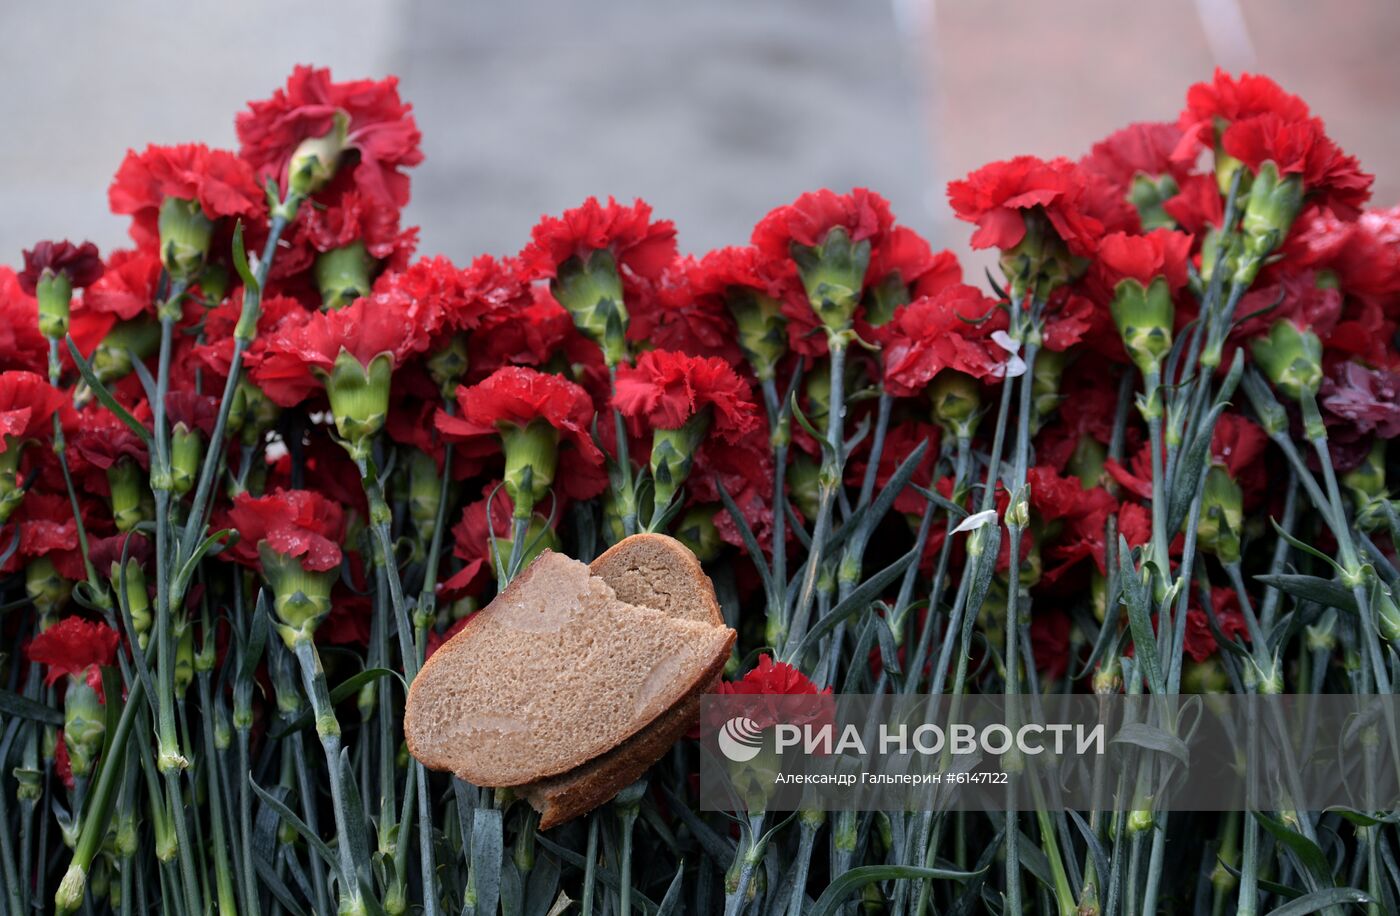 Мероприятия, посвященные 76-й годовщине полного освобождения Ленинграда от фашистской блокады